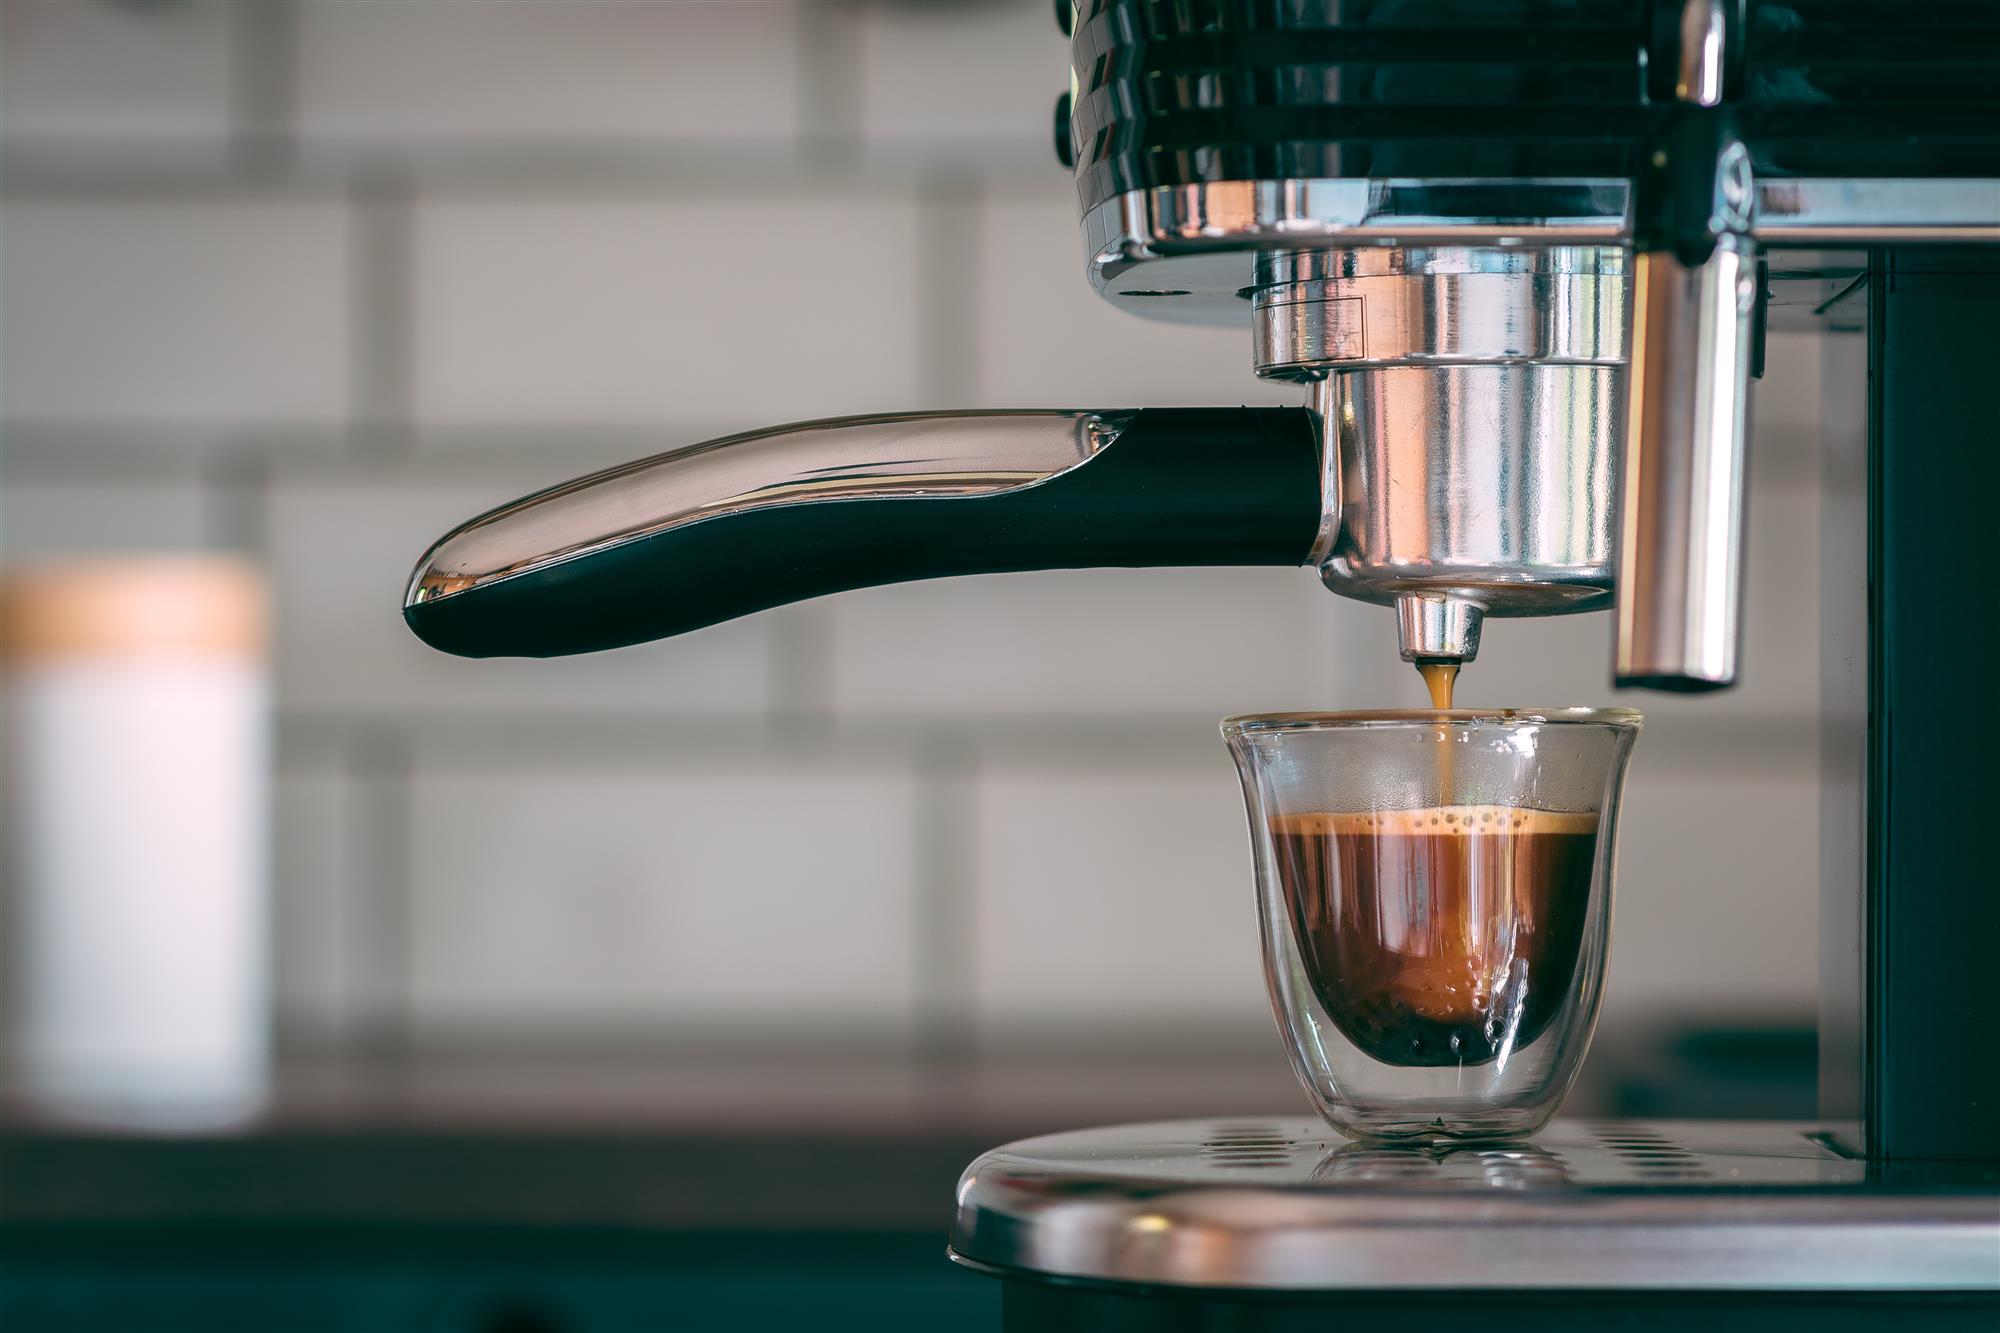 Le migliori macchine da caffè a cialde: come scegliere quella giusta?